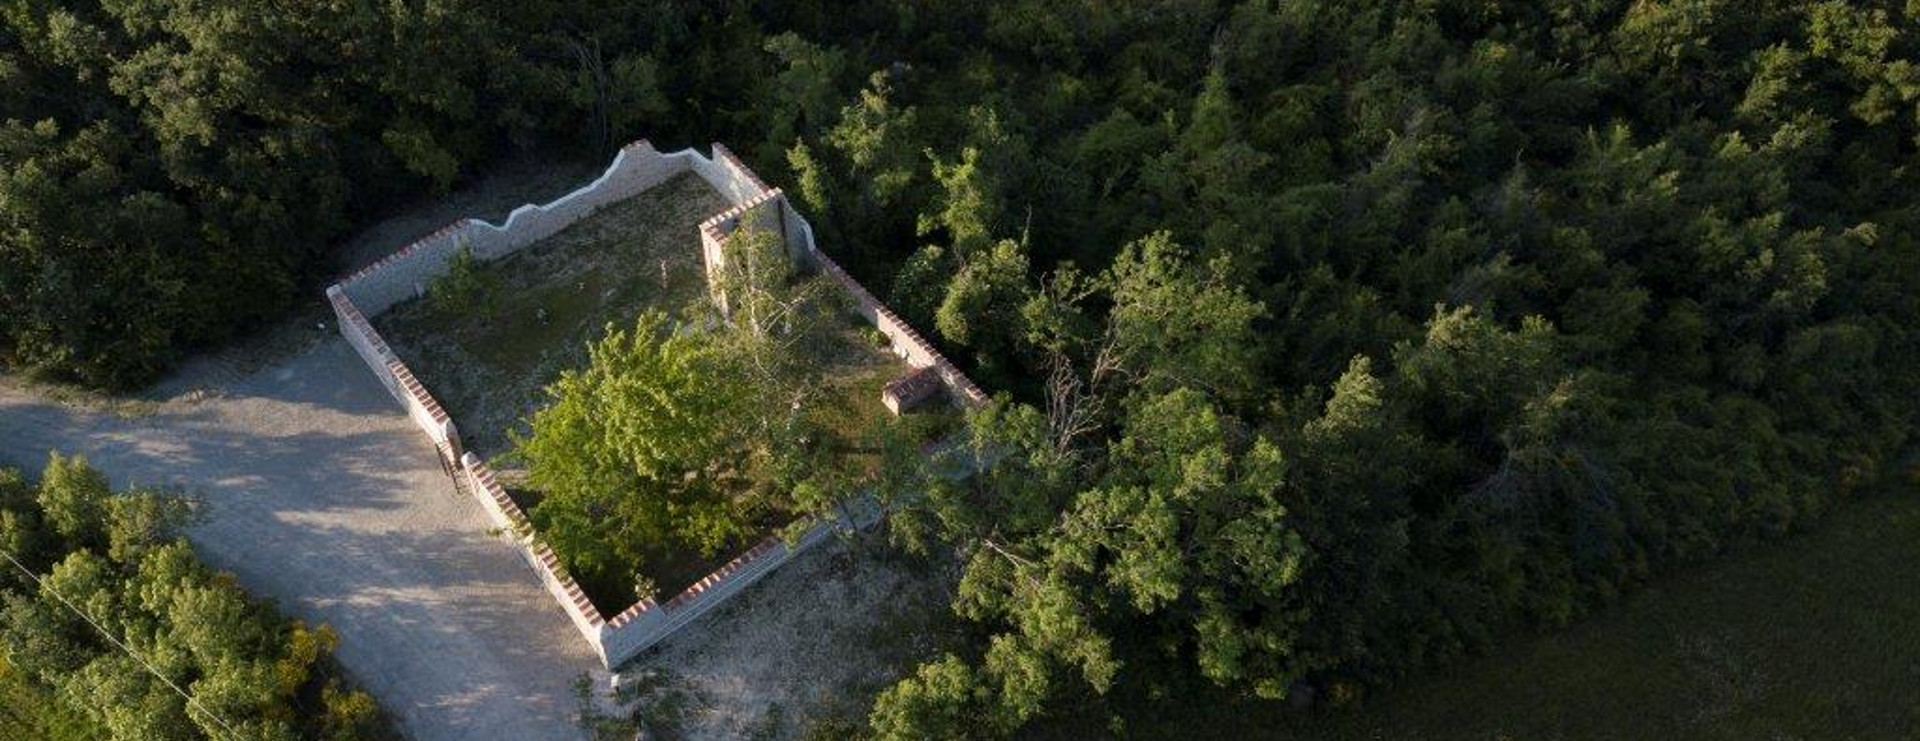 Cimitero di Casaglia restaurato - Foto Ente parchi Emilia Orientale